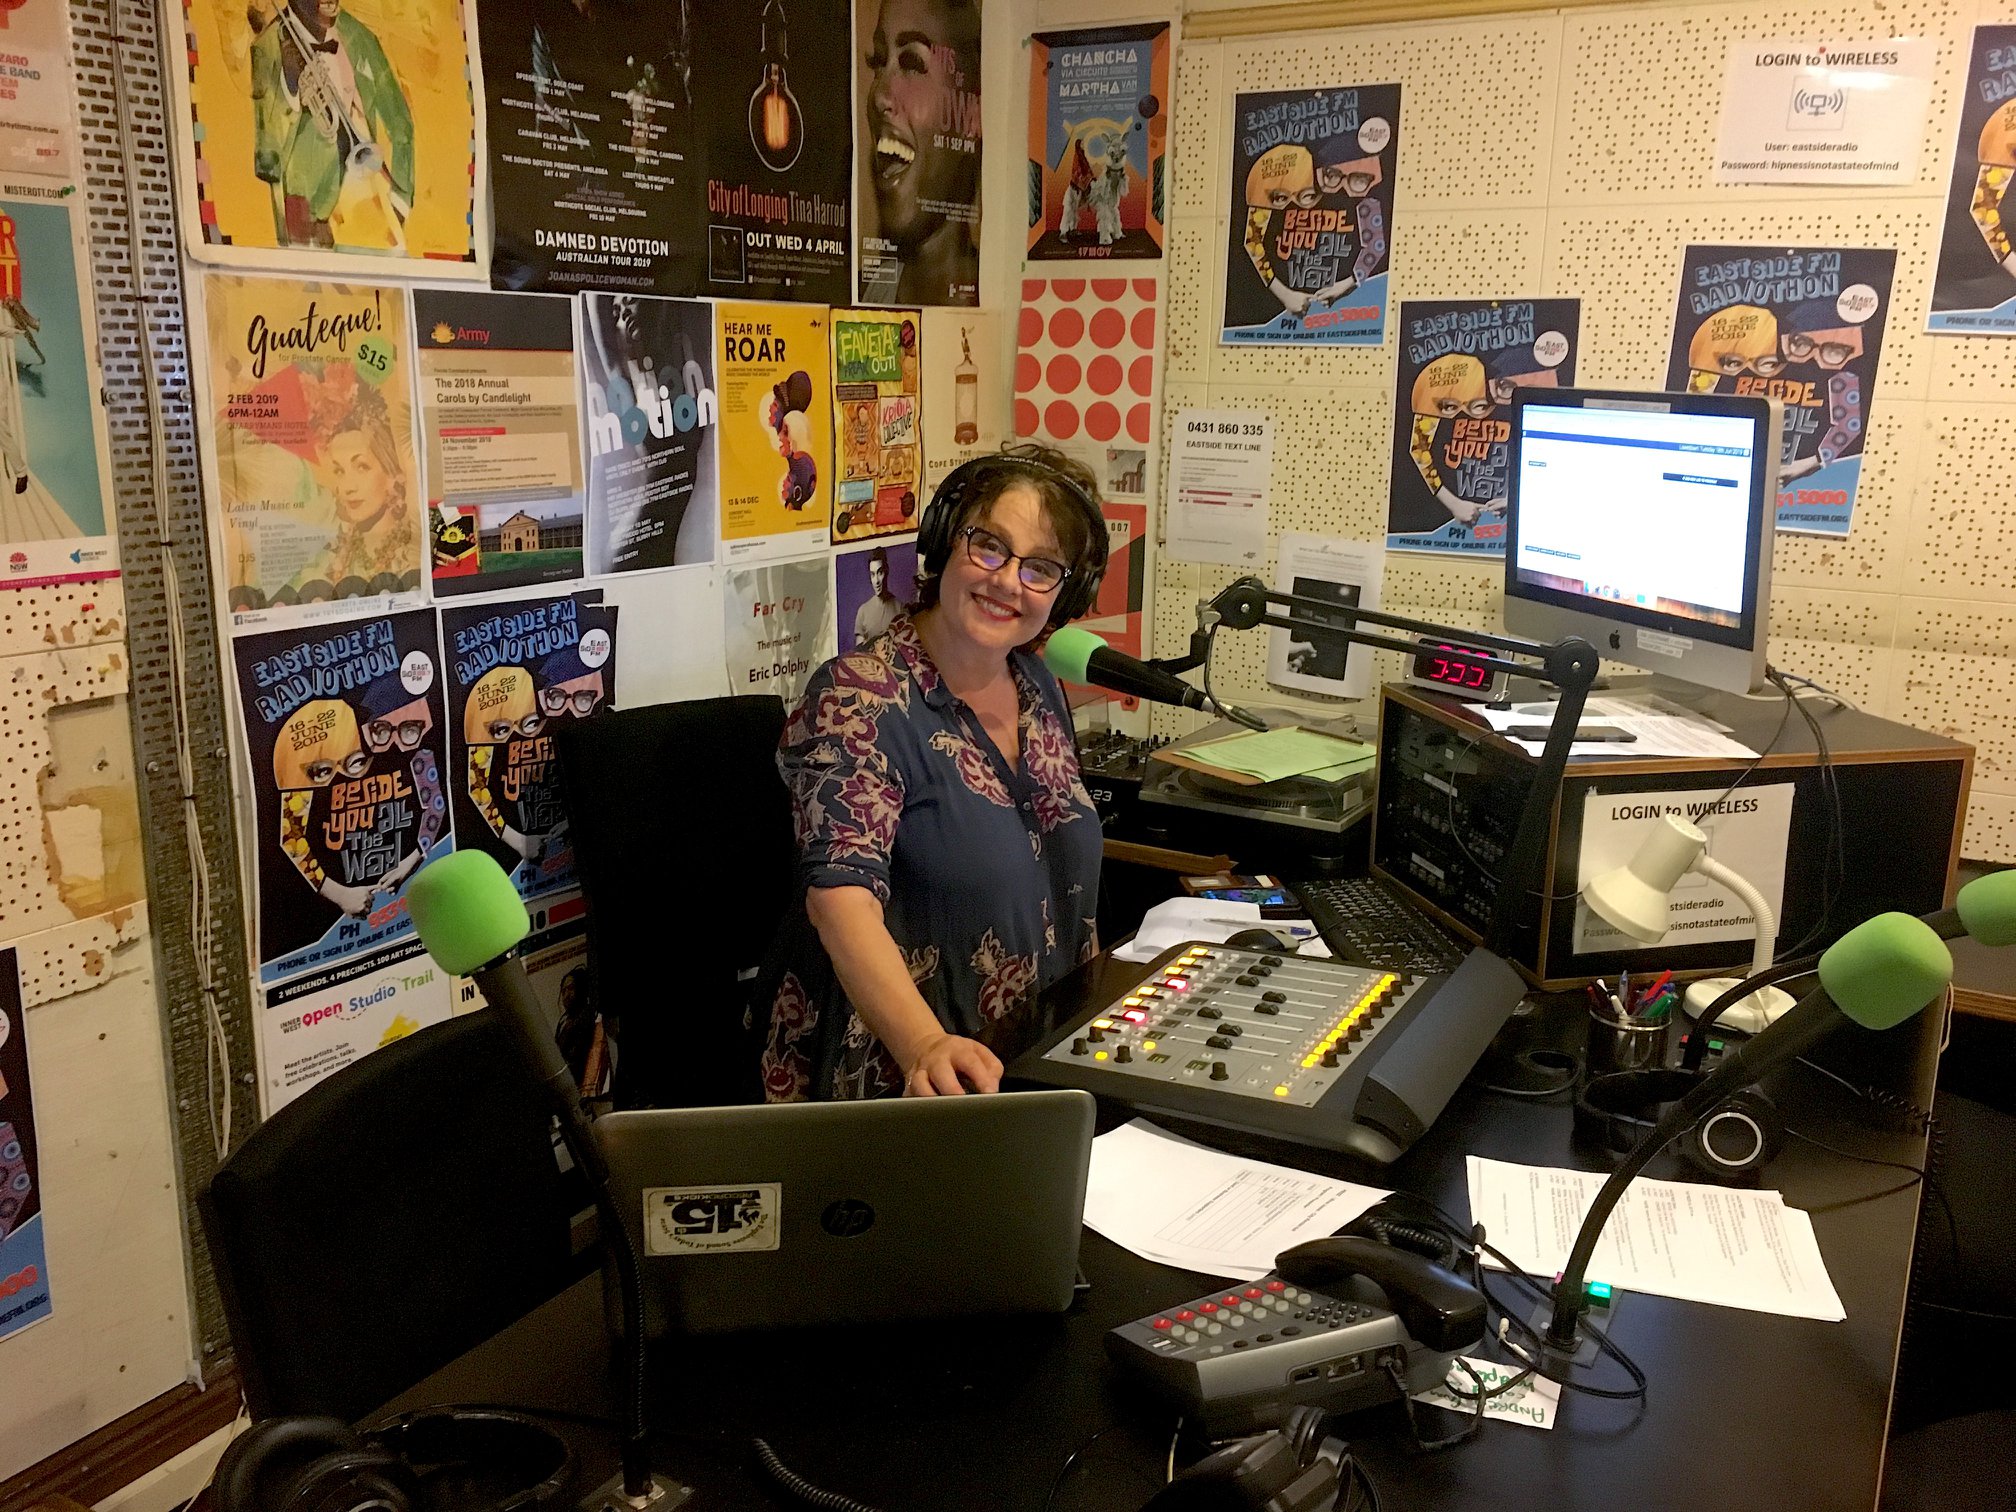 Eastside radio awarded license to broadcast from Bondi Pavilion